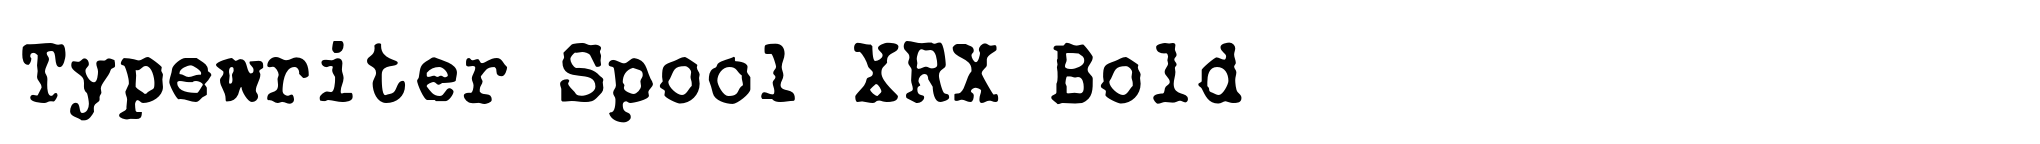 Typewriter Spool XRX Bold image